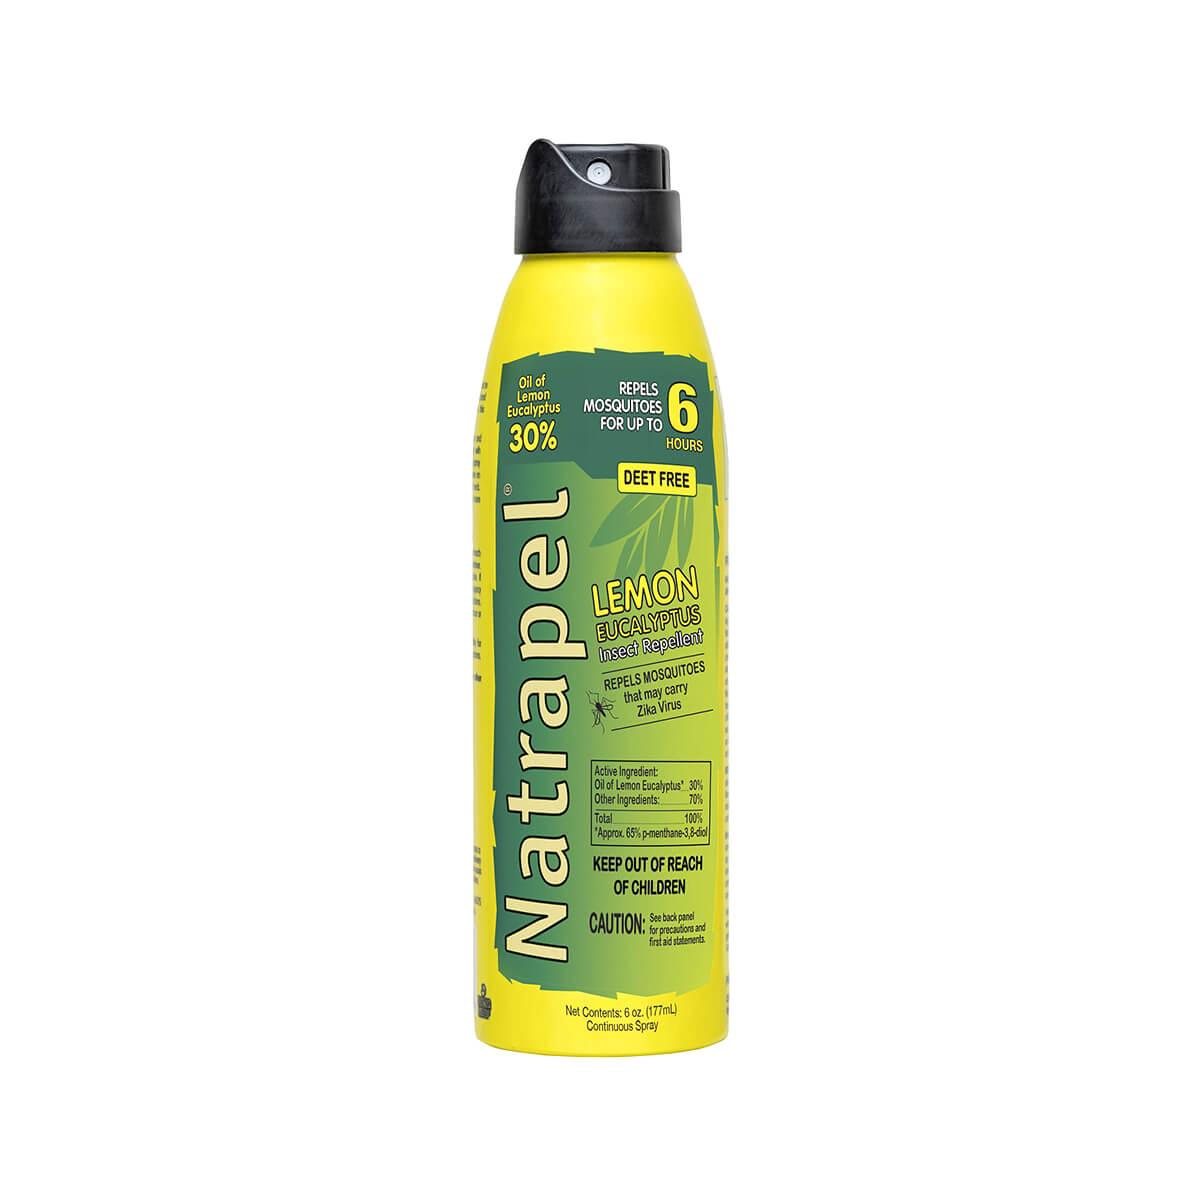  Natrapel Lemon Eucalyptus Eco- Spray - 6 Ounce